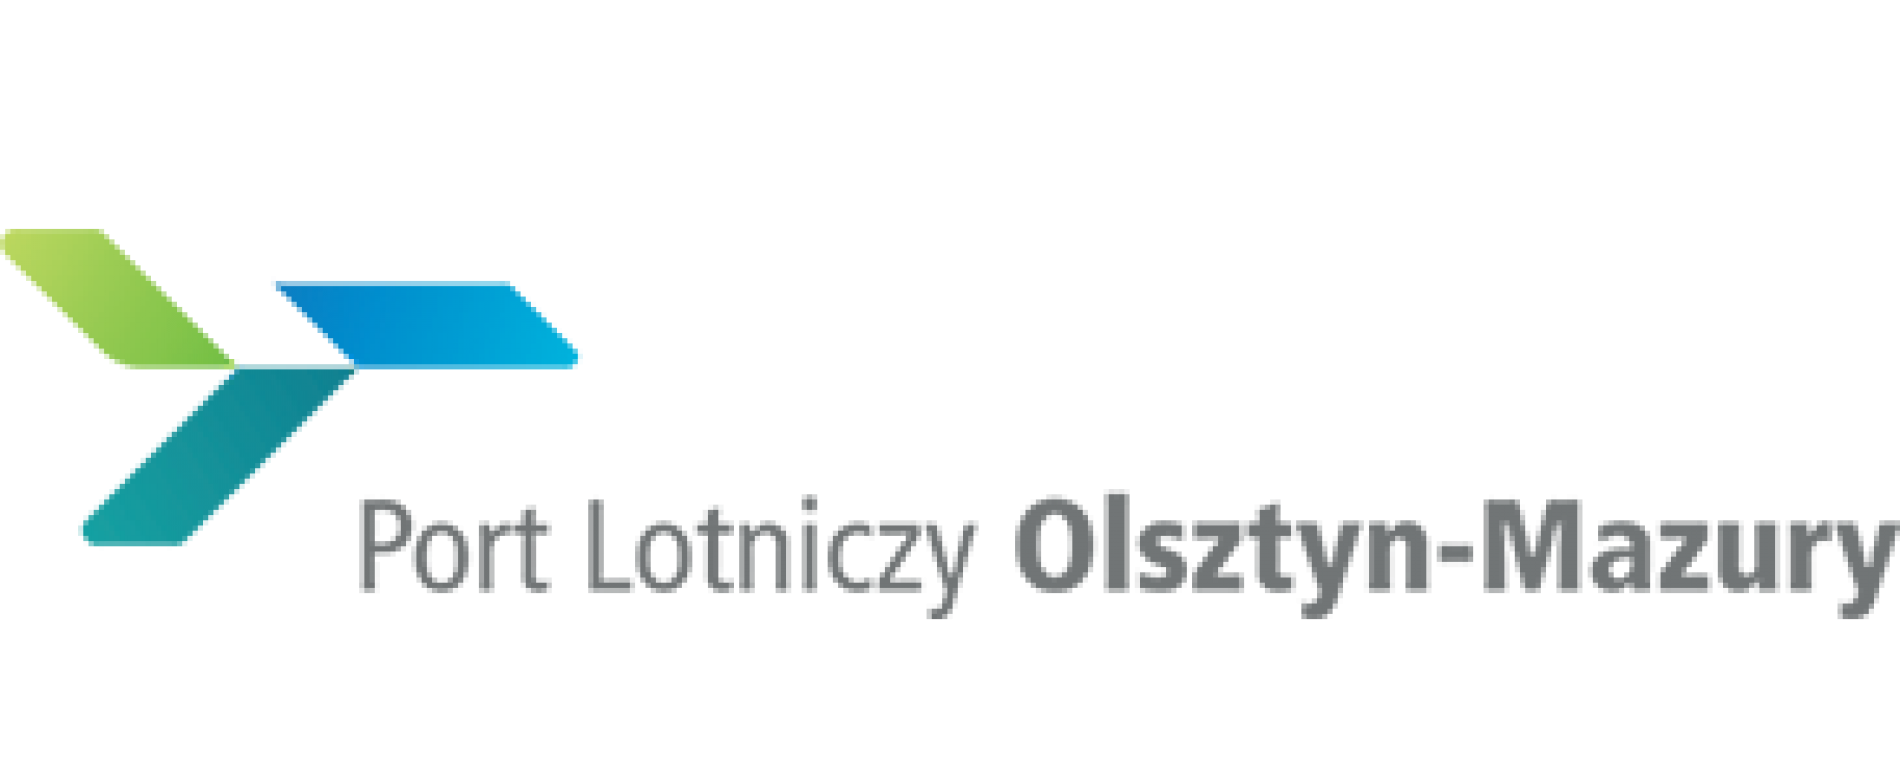 Port Lotniczy Olsztyn-Mazury osiągnął rekordową ilość odprawionych pasażerów